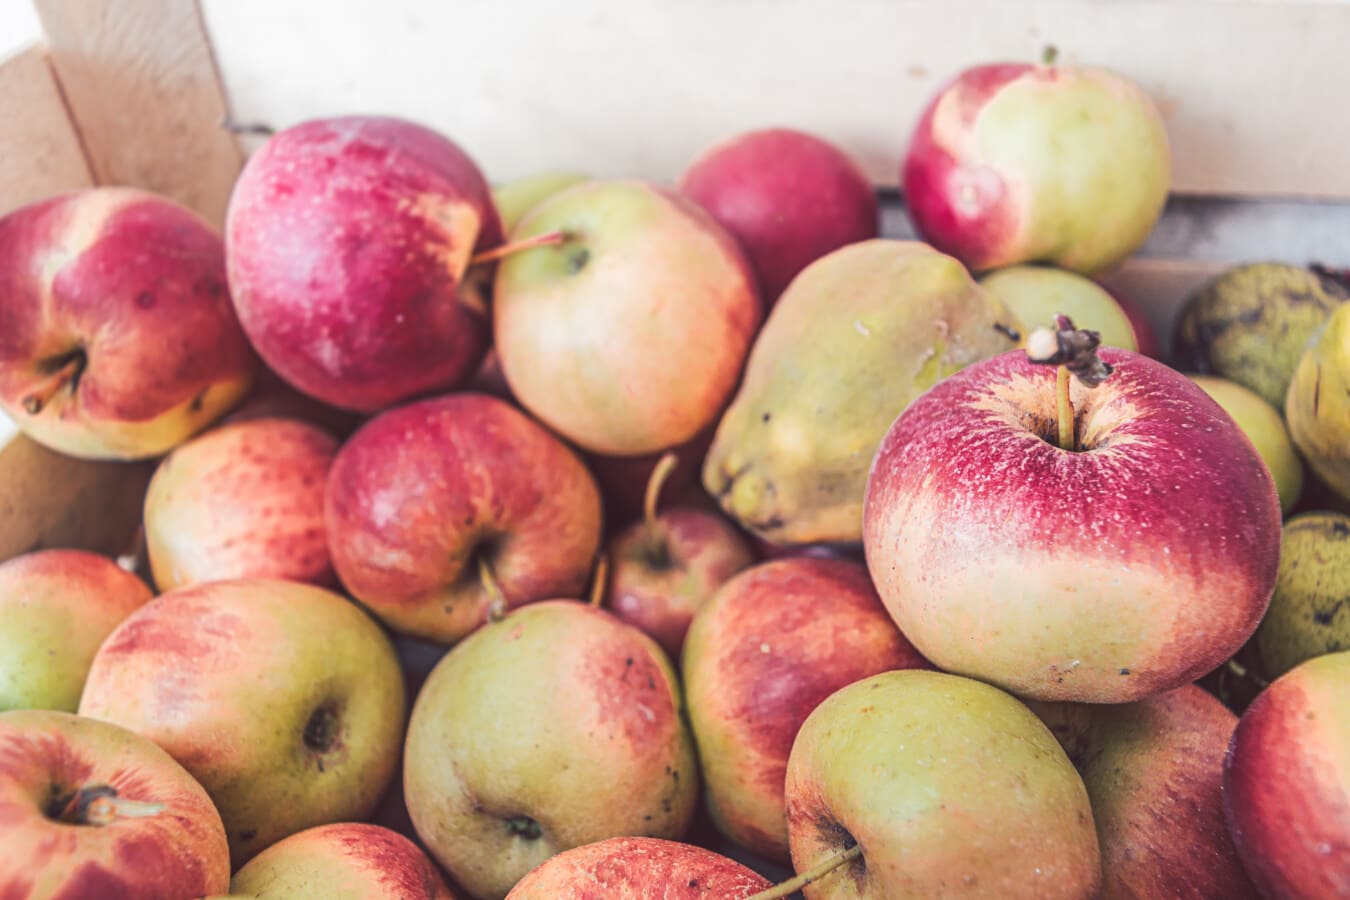 orgânicos, maçãs, frutas, fruta madura, produtos, agricultura, fresco, delicioso, maçã, saudável